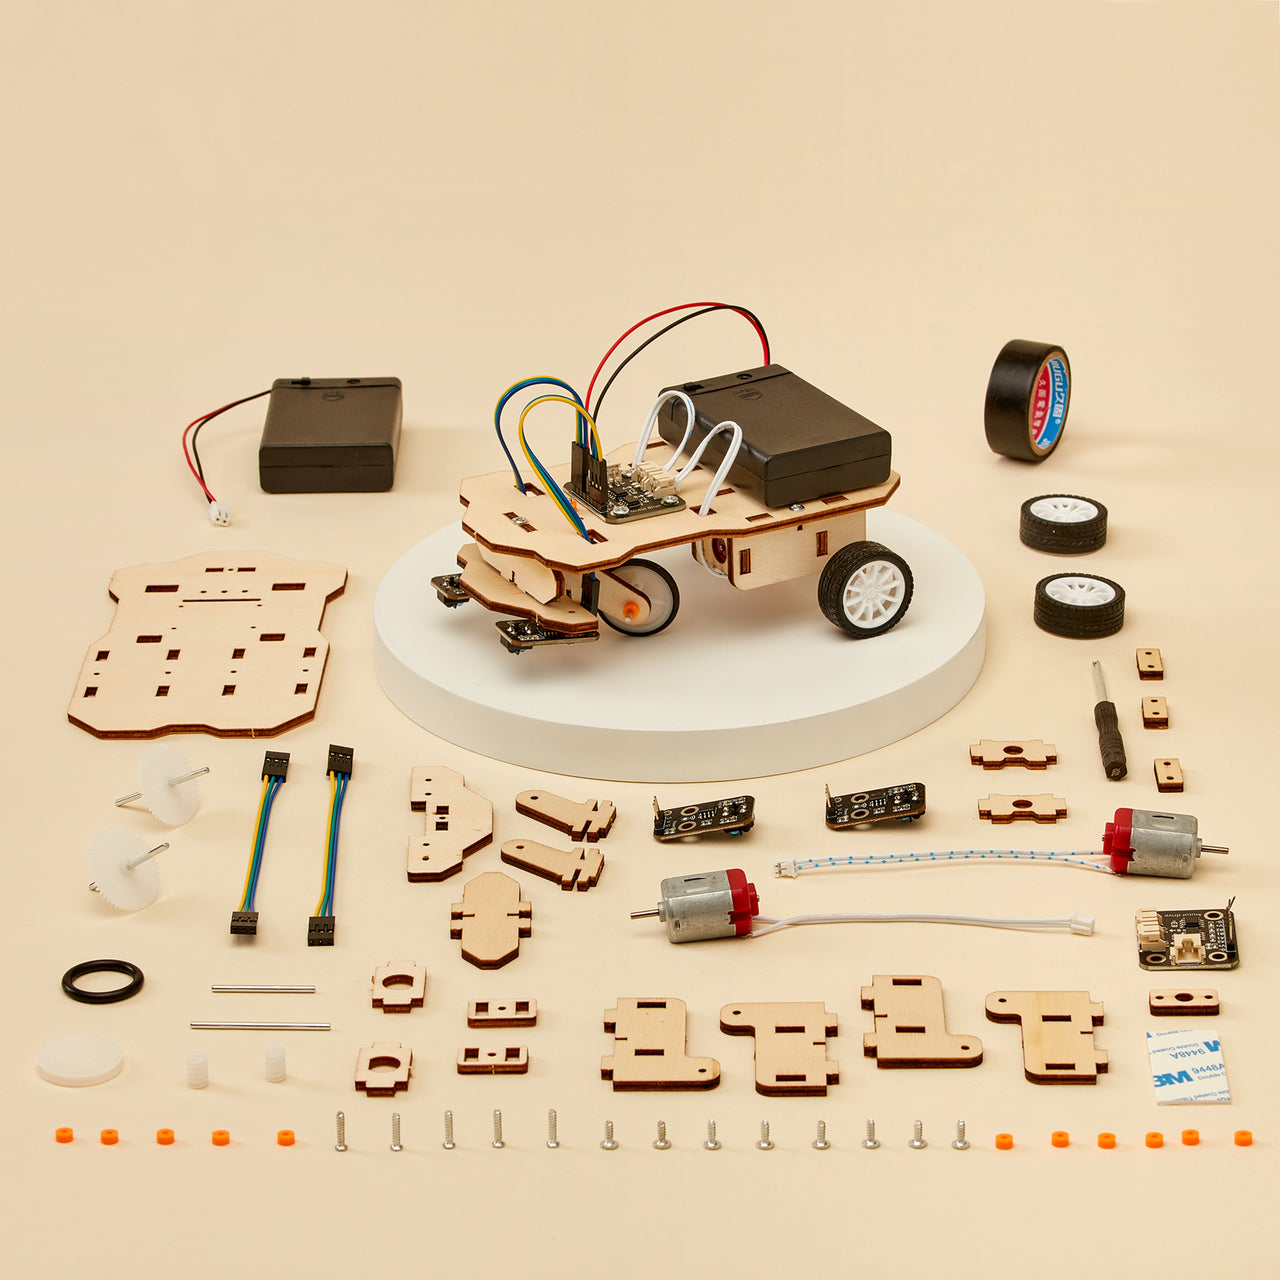 Kit de bricolage pour robot suiveur de ligne CreateKit